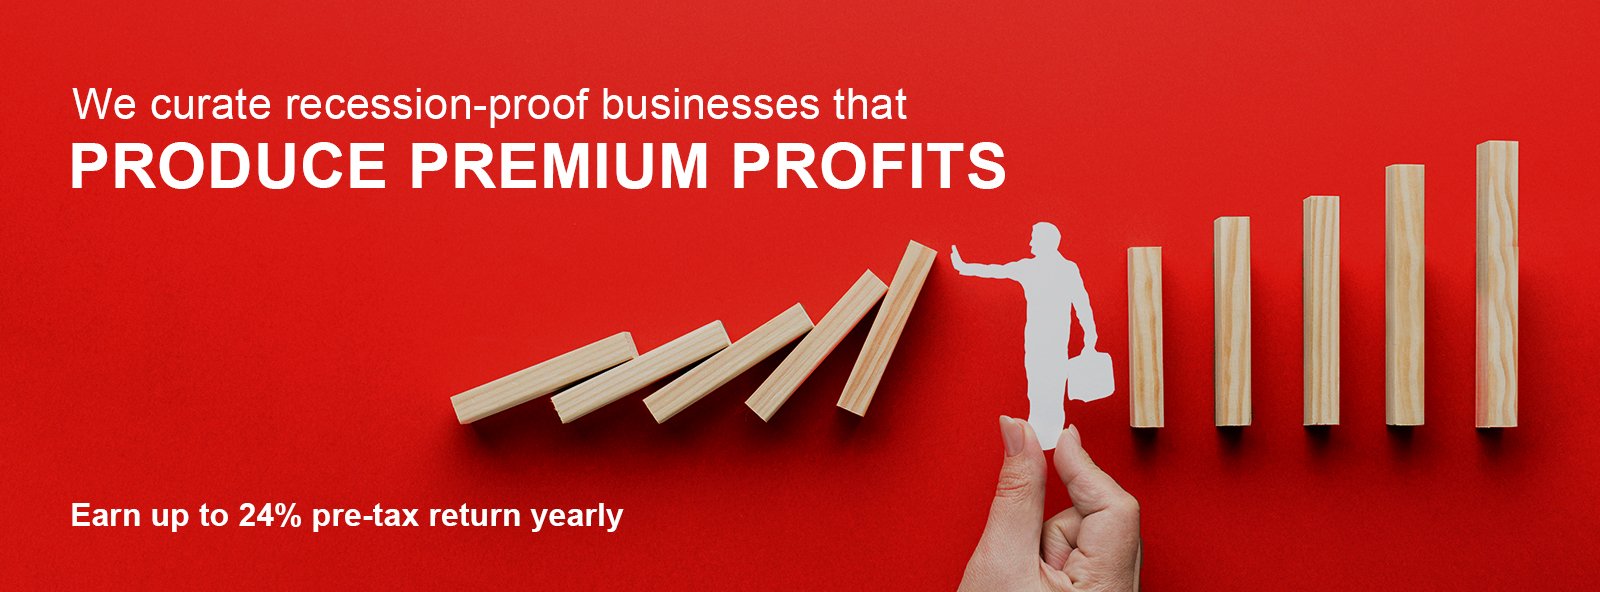 produce premium profits